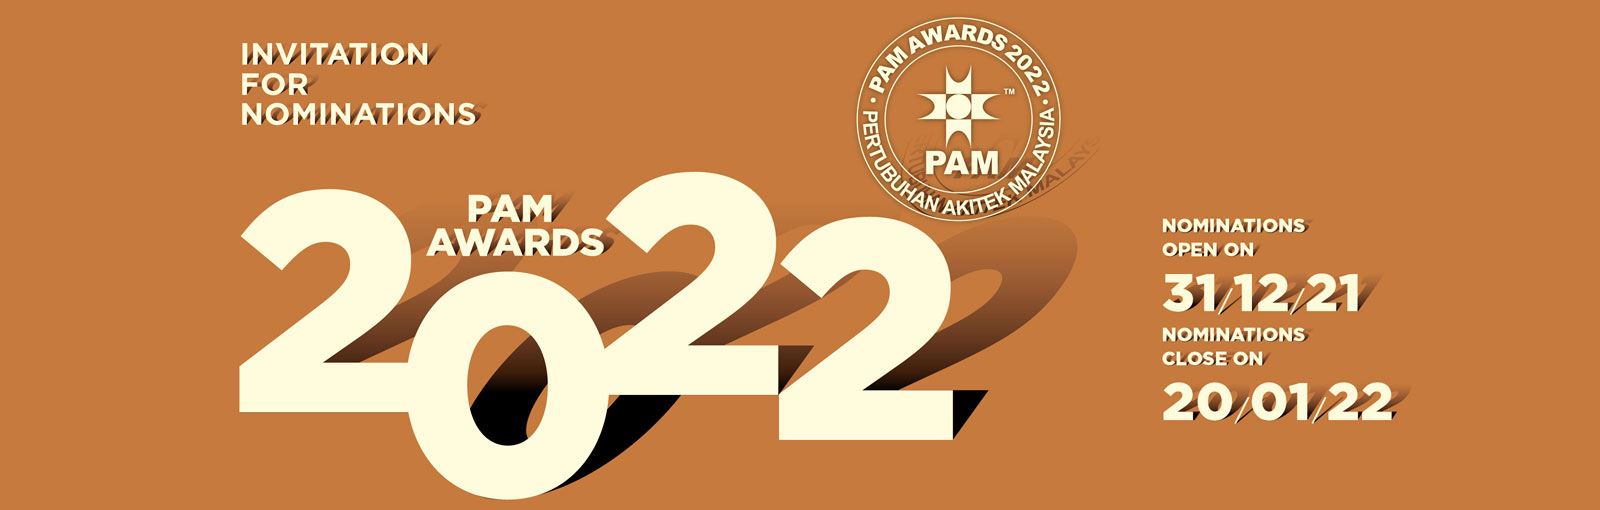 PAM Awards 2022